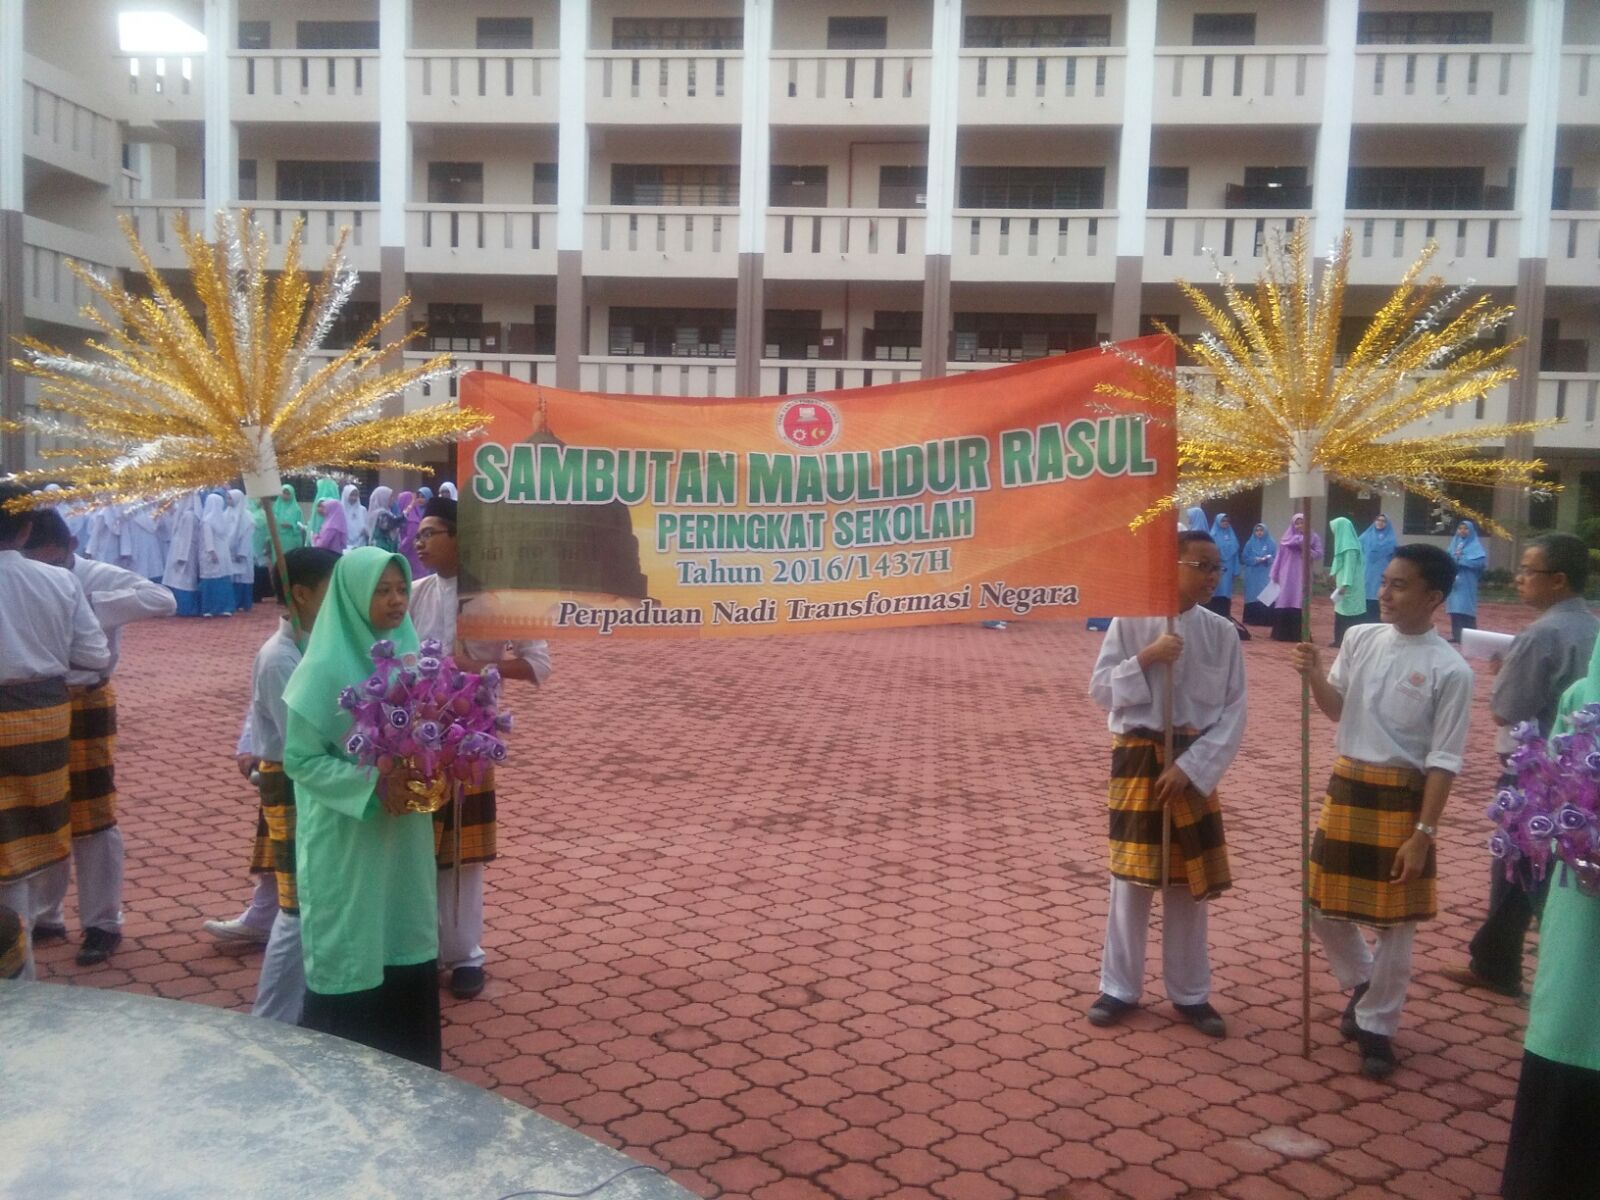 SMK Senawang 3: Sambutan Maulidur Rasul 2016